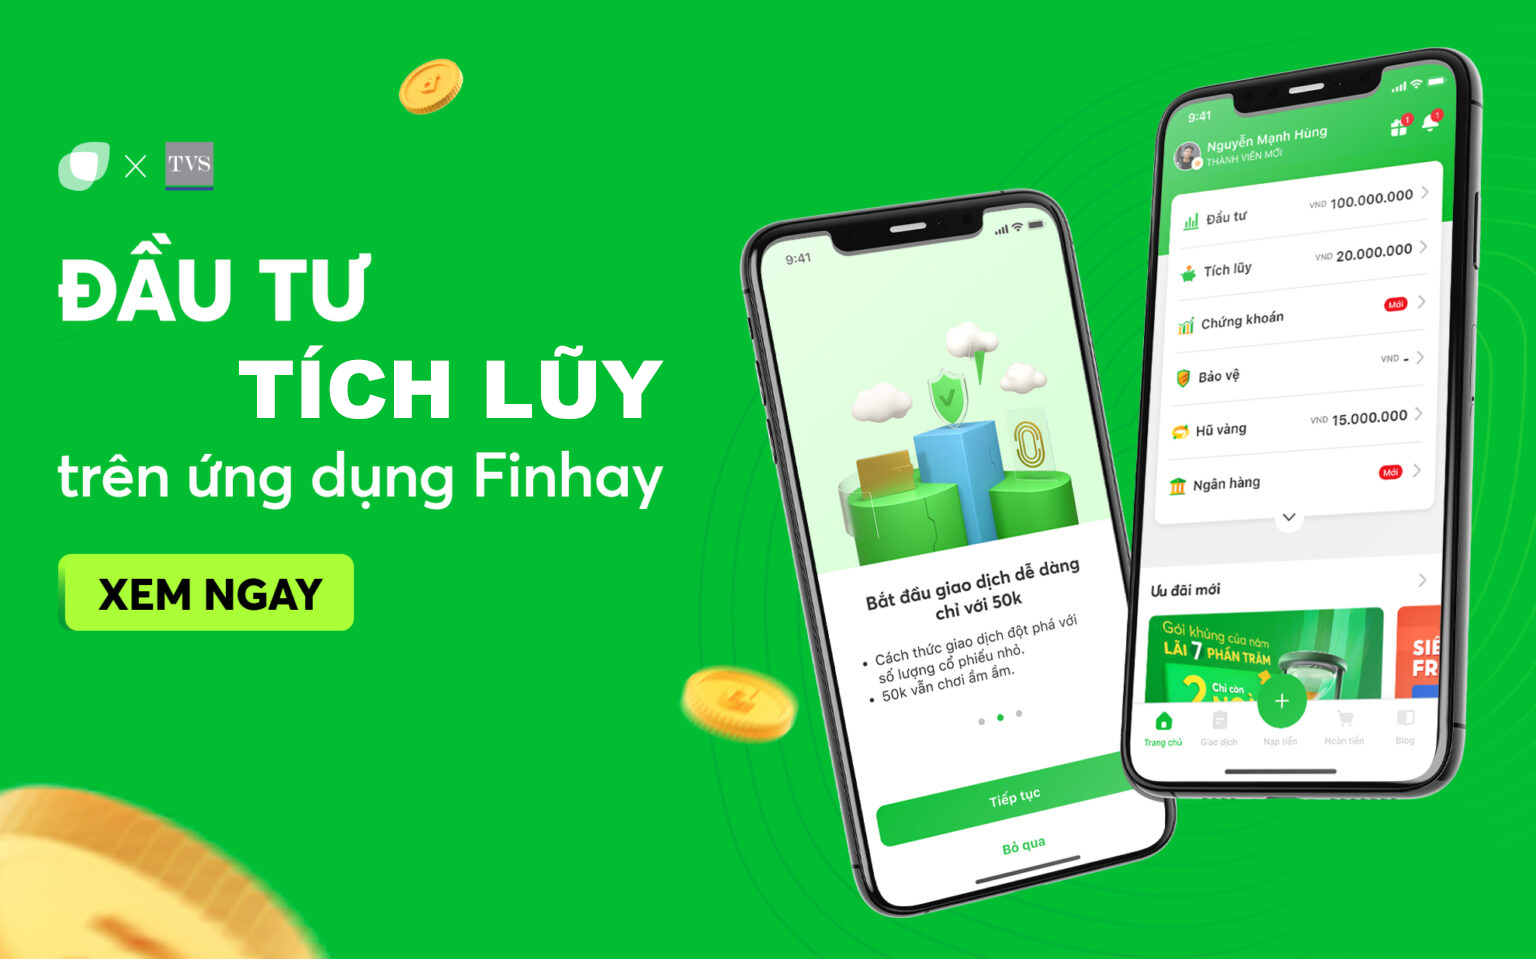 Finhay app tiết kiệm tiền và đầu tư an toàn